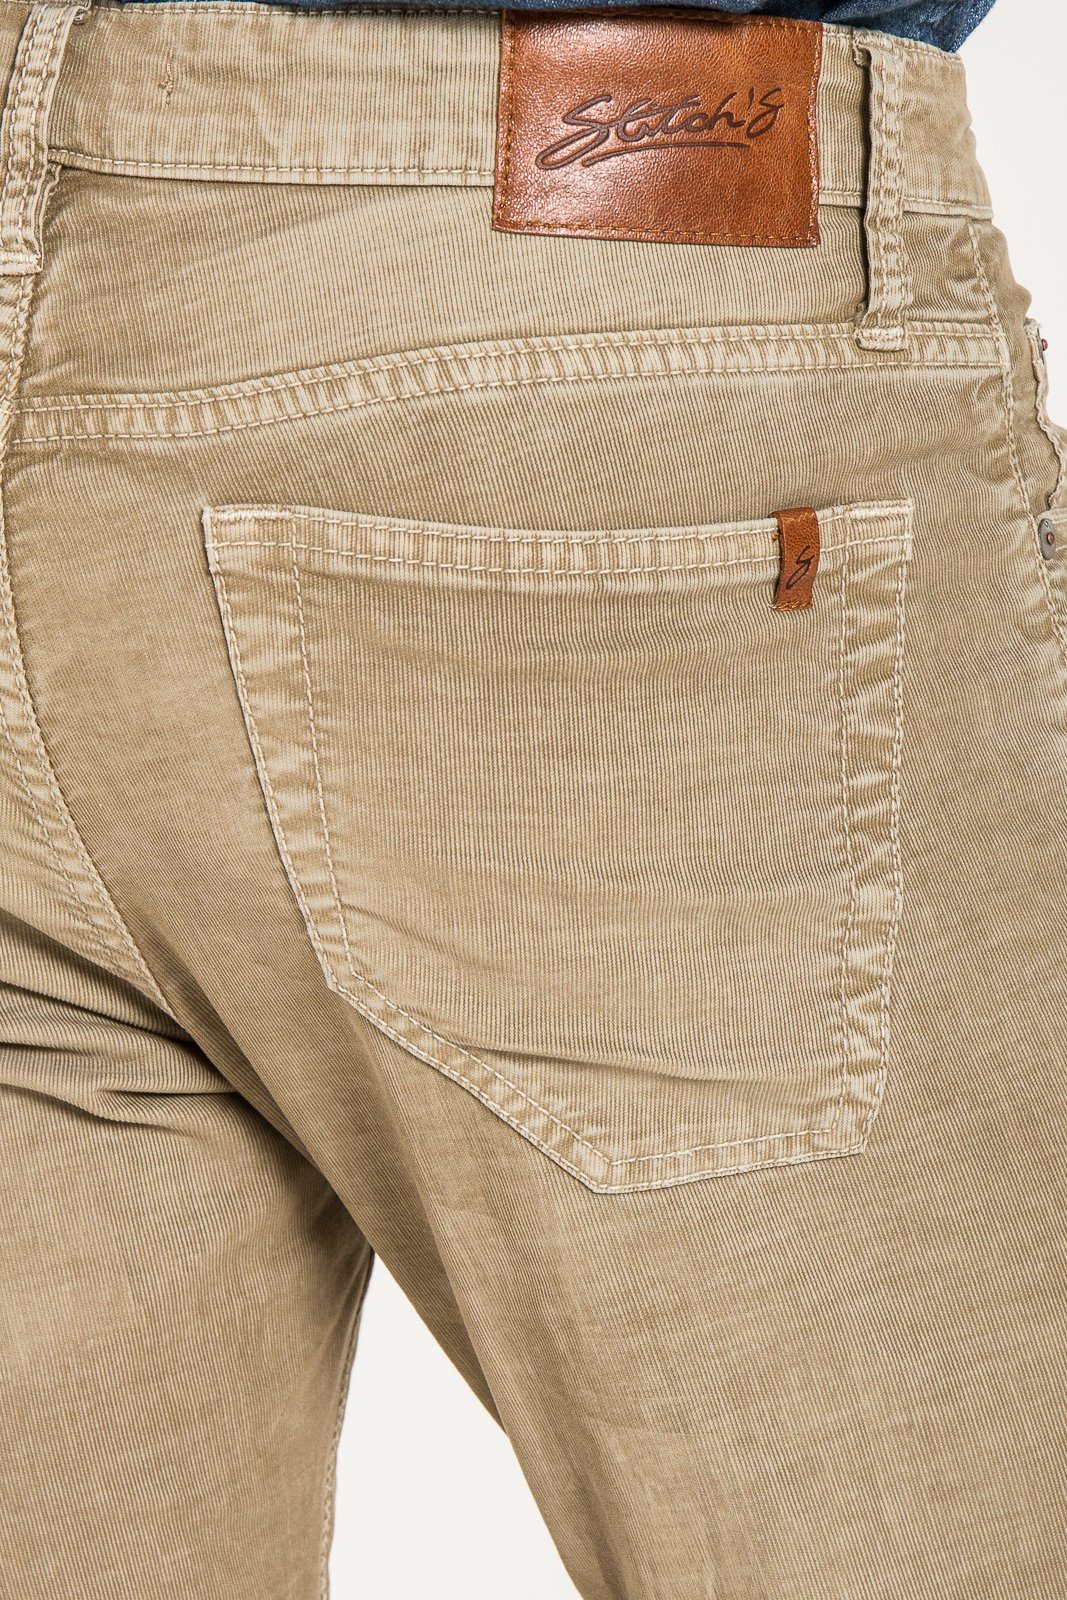 BARFLY SLIM JEANS JEANS MERINO IN Stitch\'s CORDUROY Jeans STITCHS – 